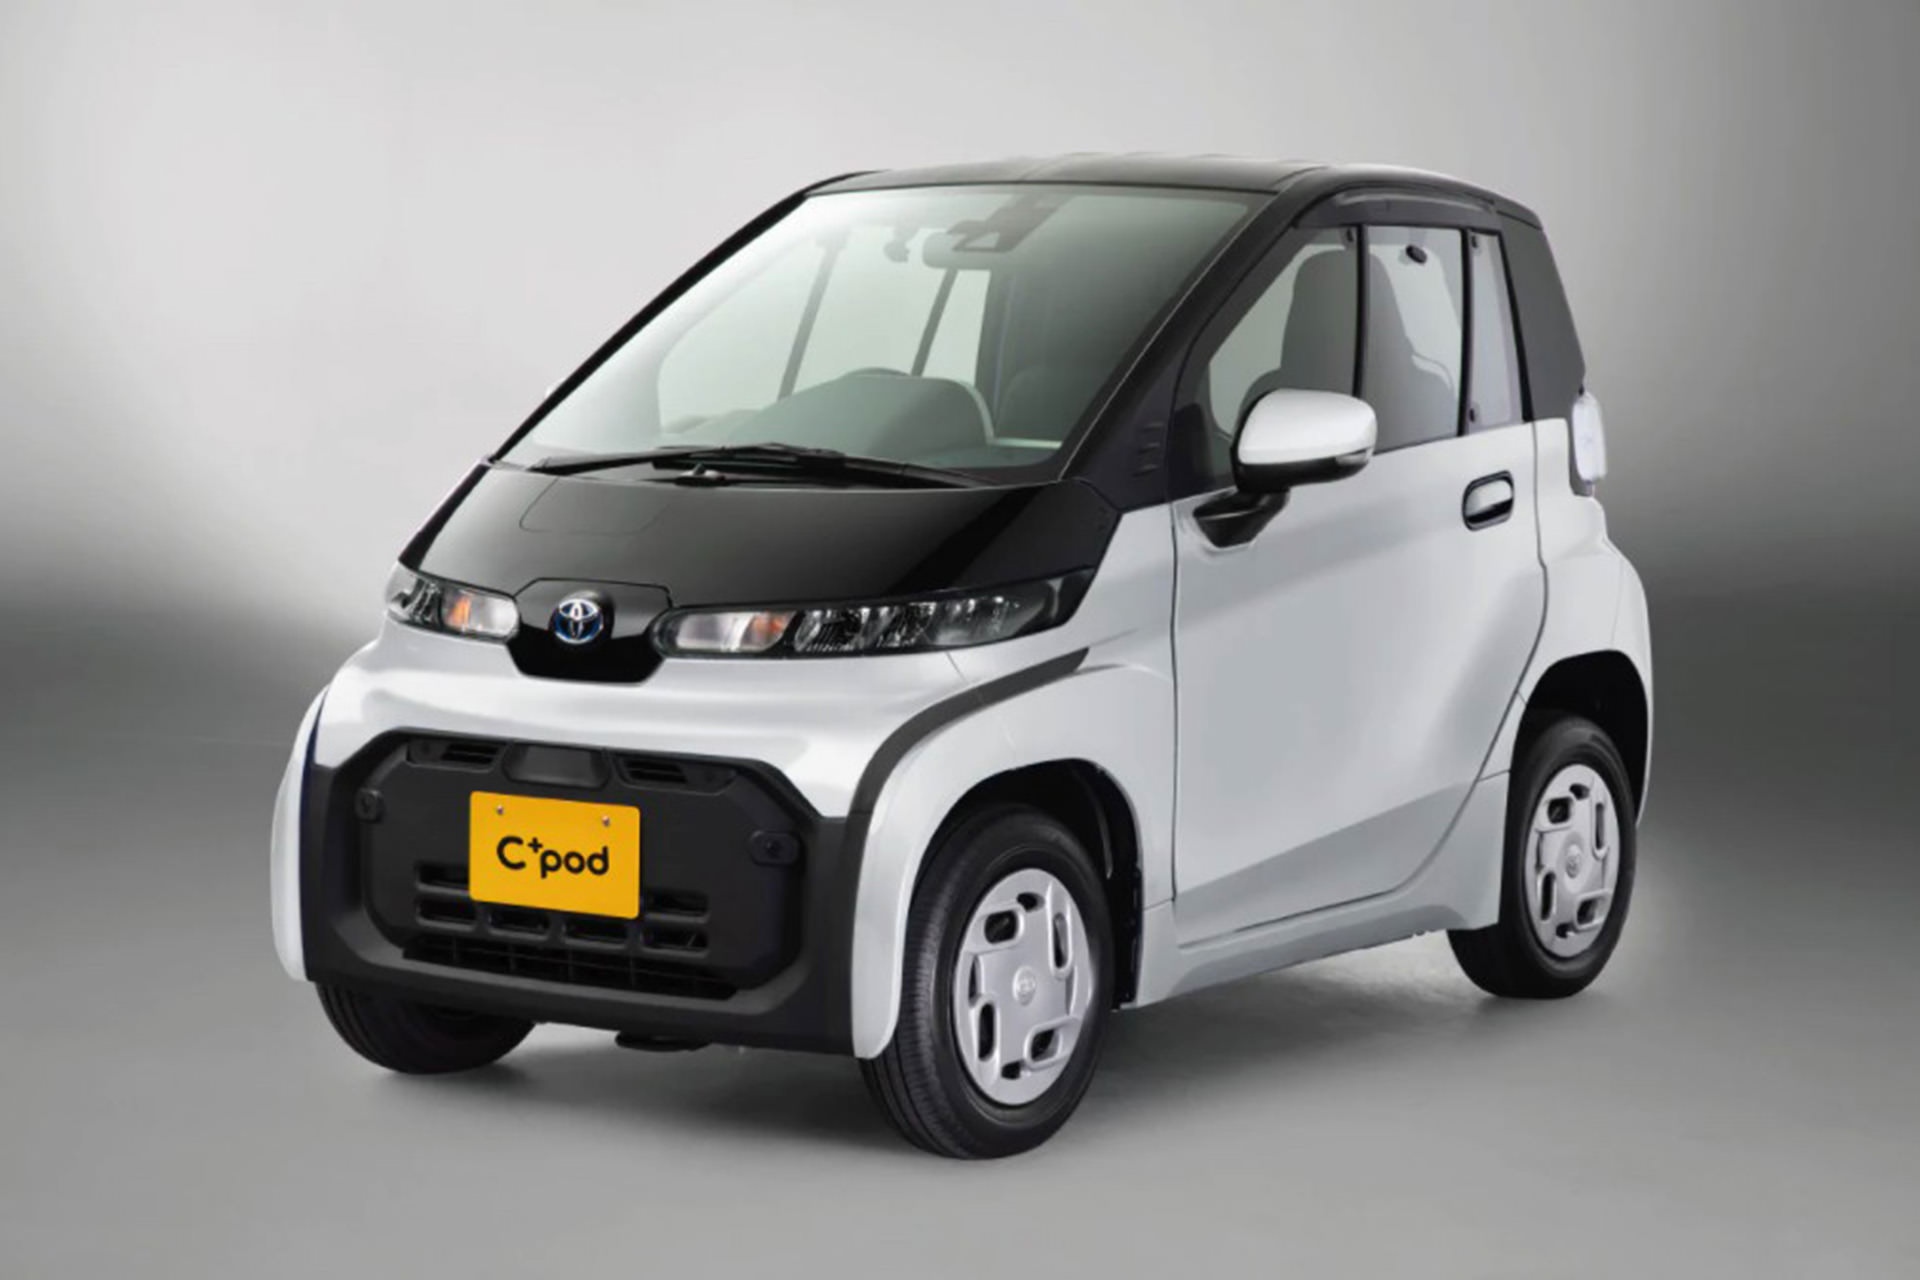 خودروی الکتریکی C+pod تویوتا برای بازار ژاپن عرضه شد